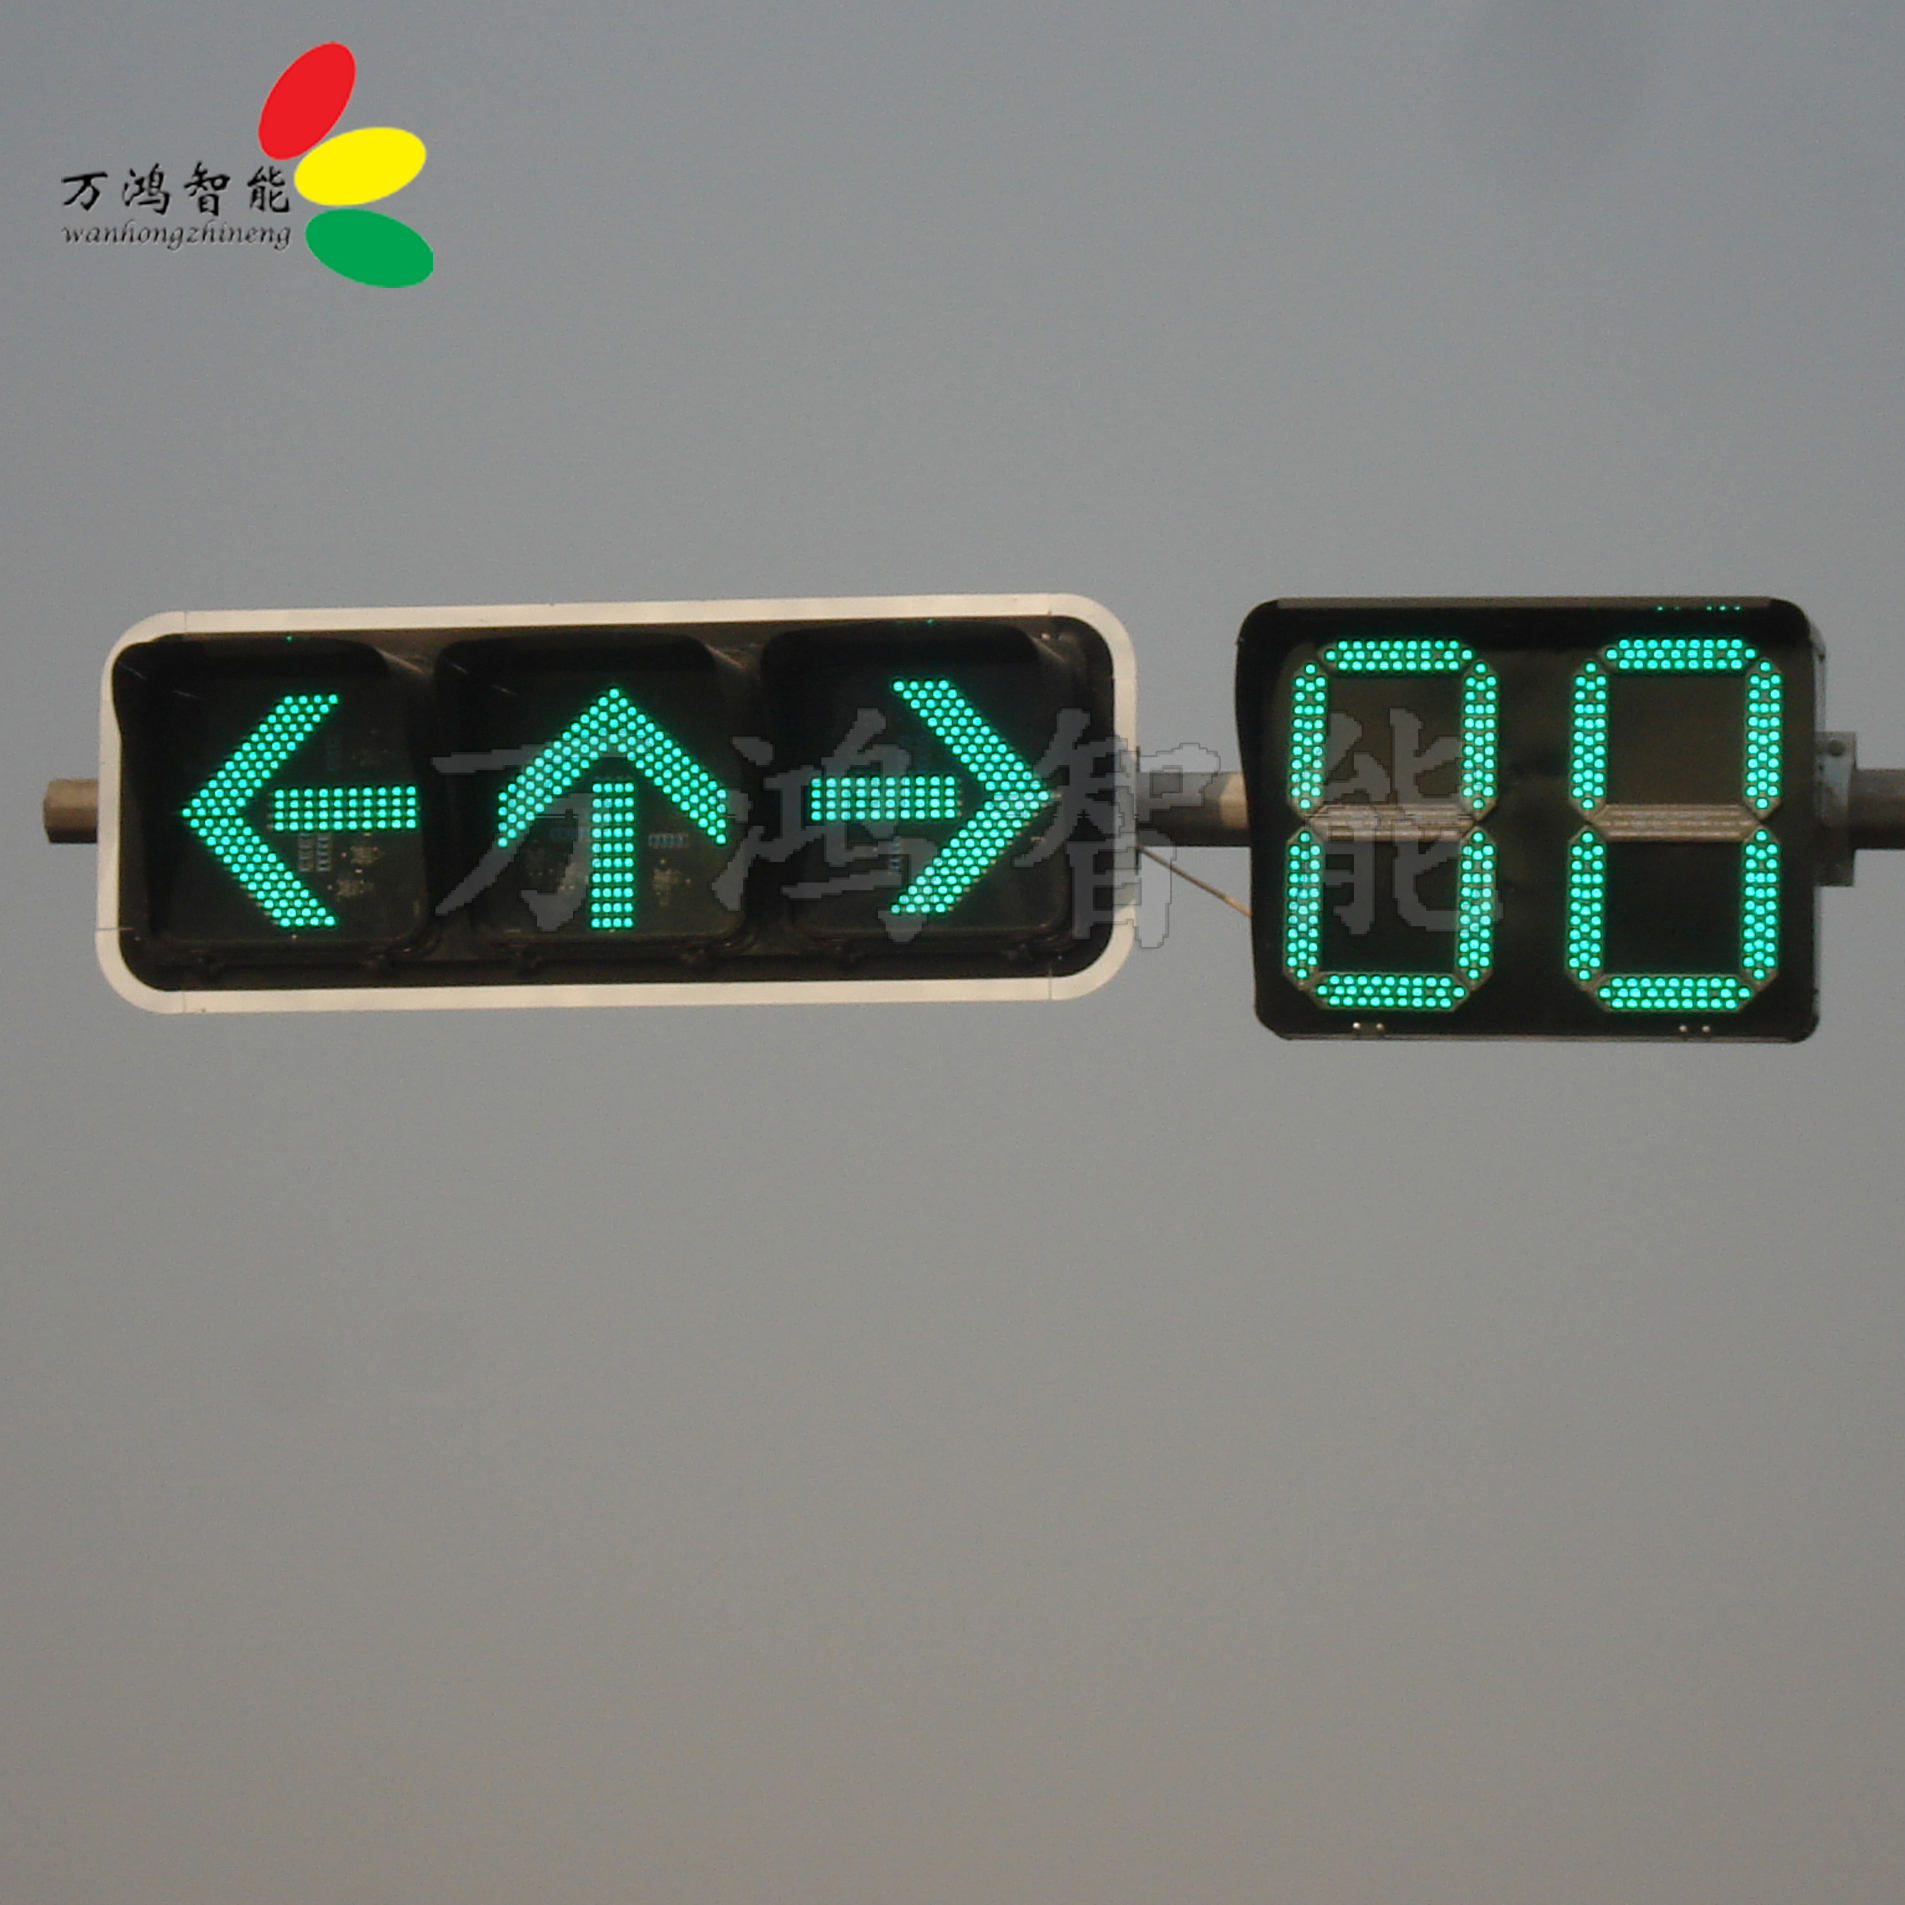 交通信号灯的各种控制方式